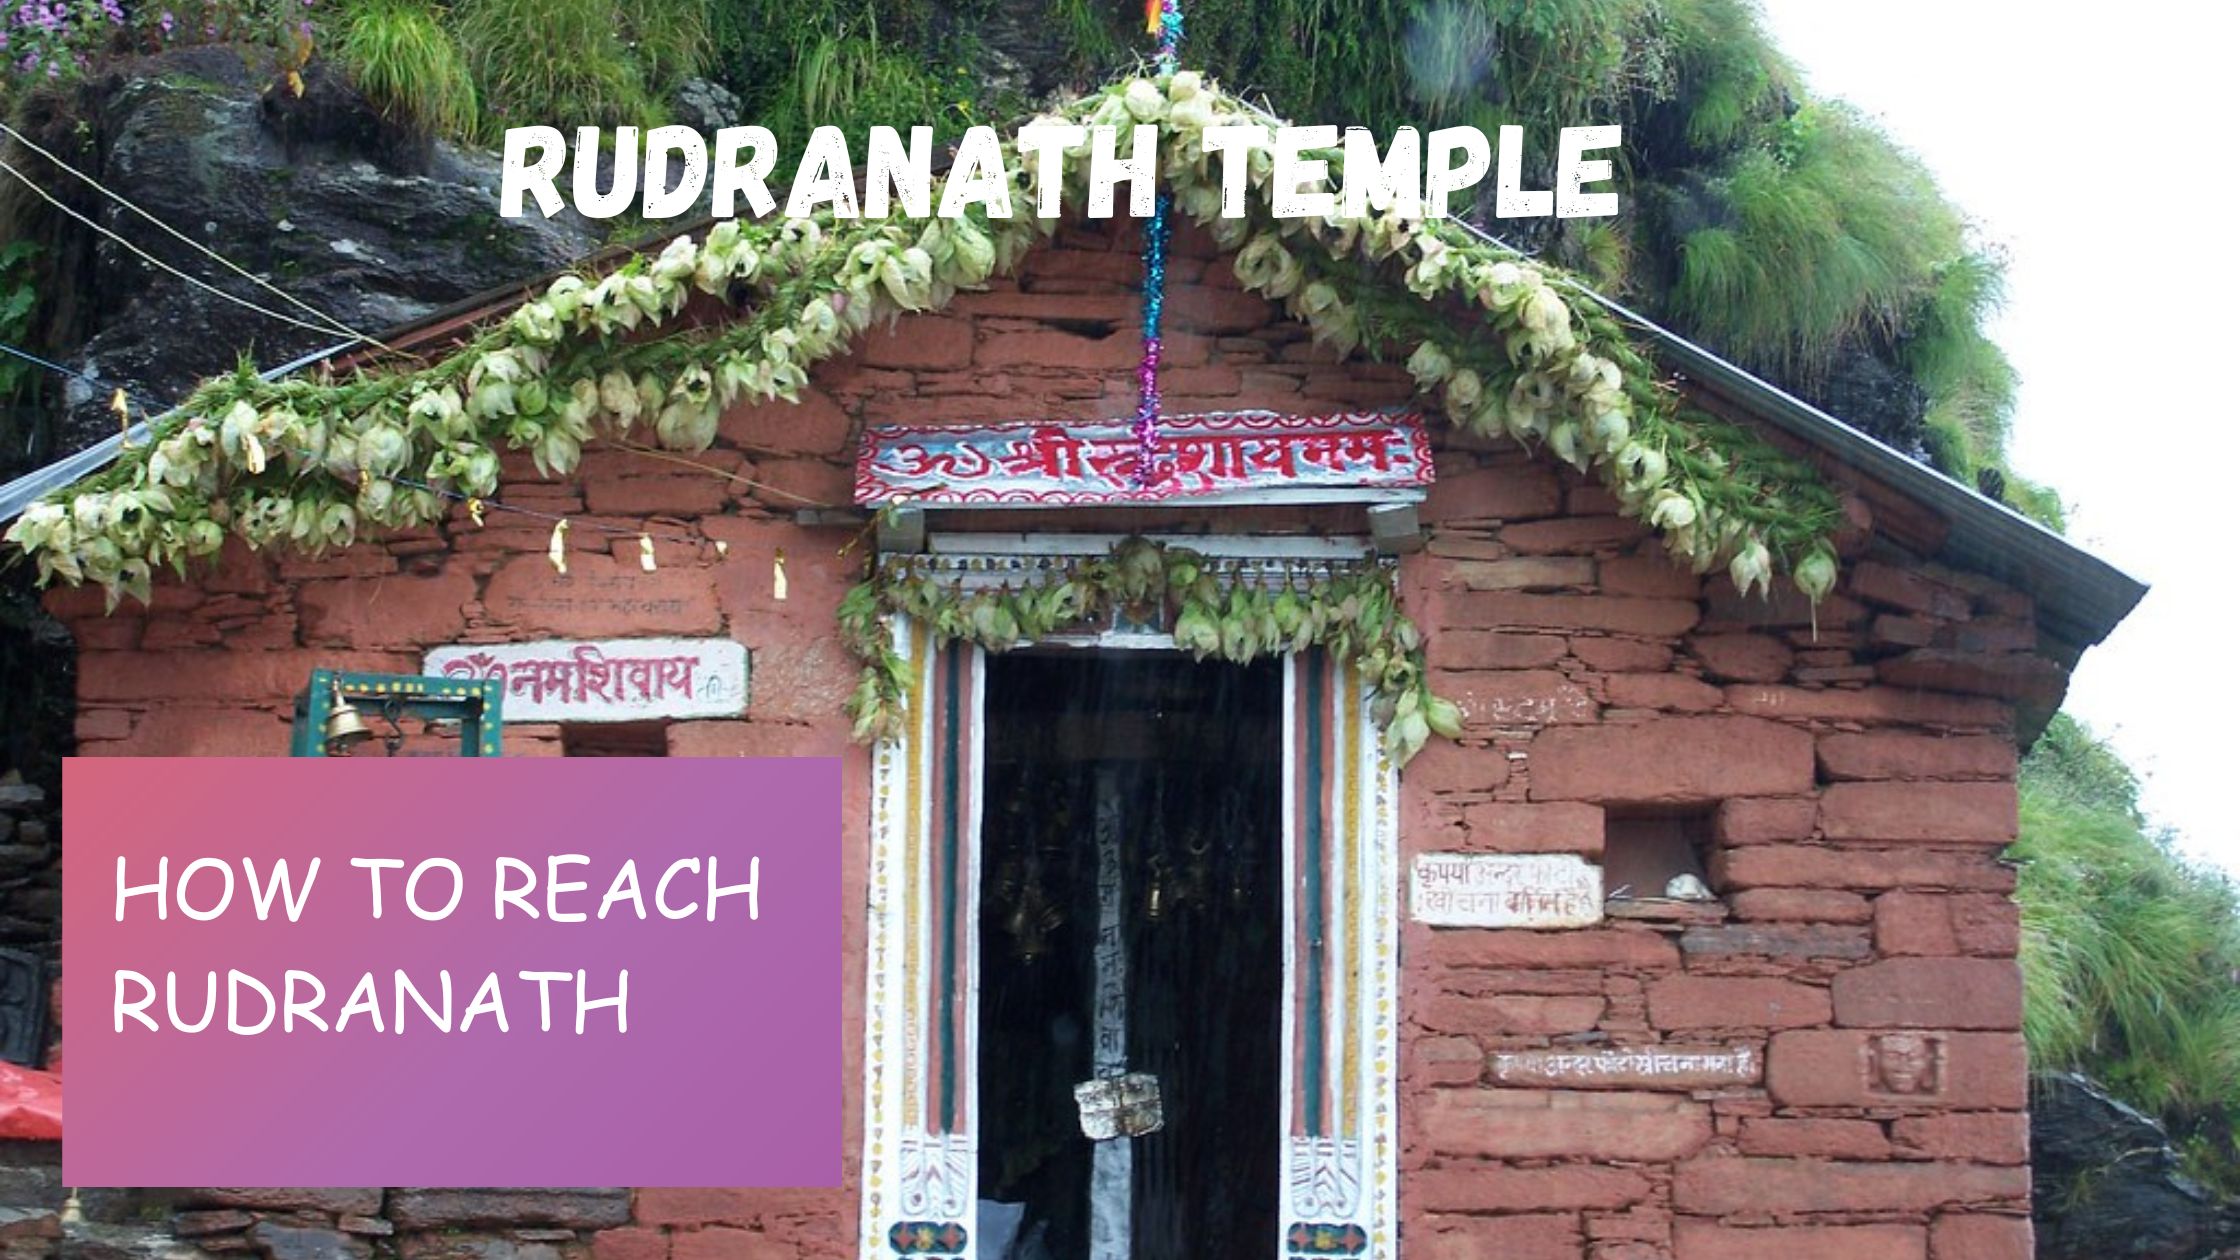 How to reach rudranath